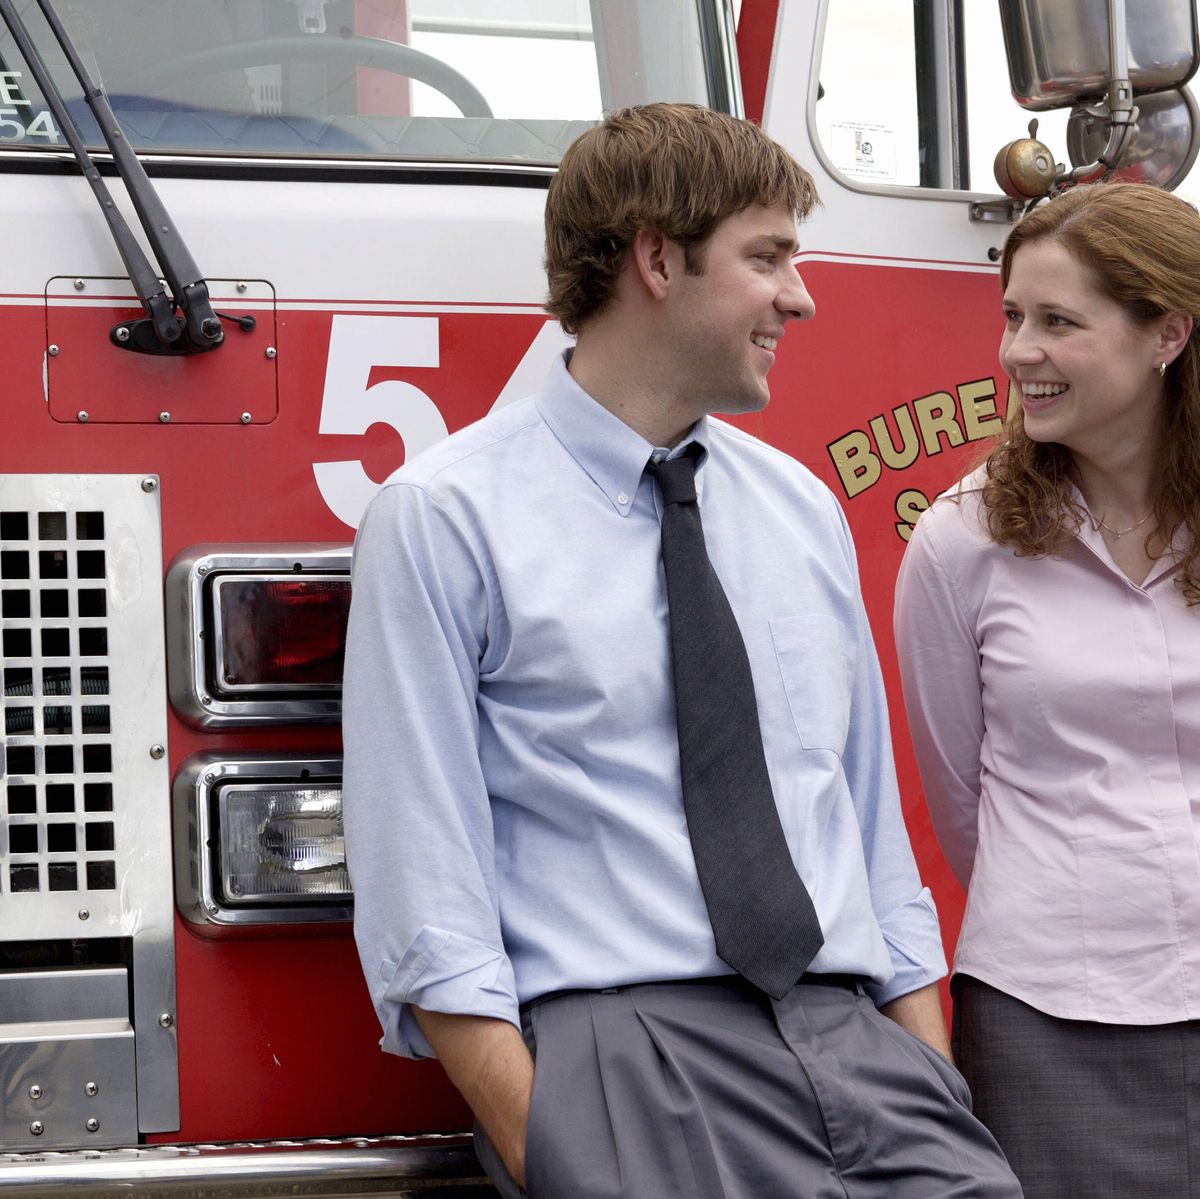 The Office': ¿Acaban juntos Pam y Jim al final de la serie?